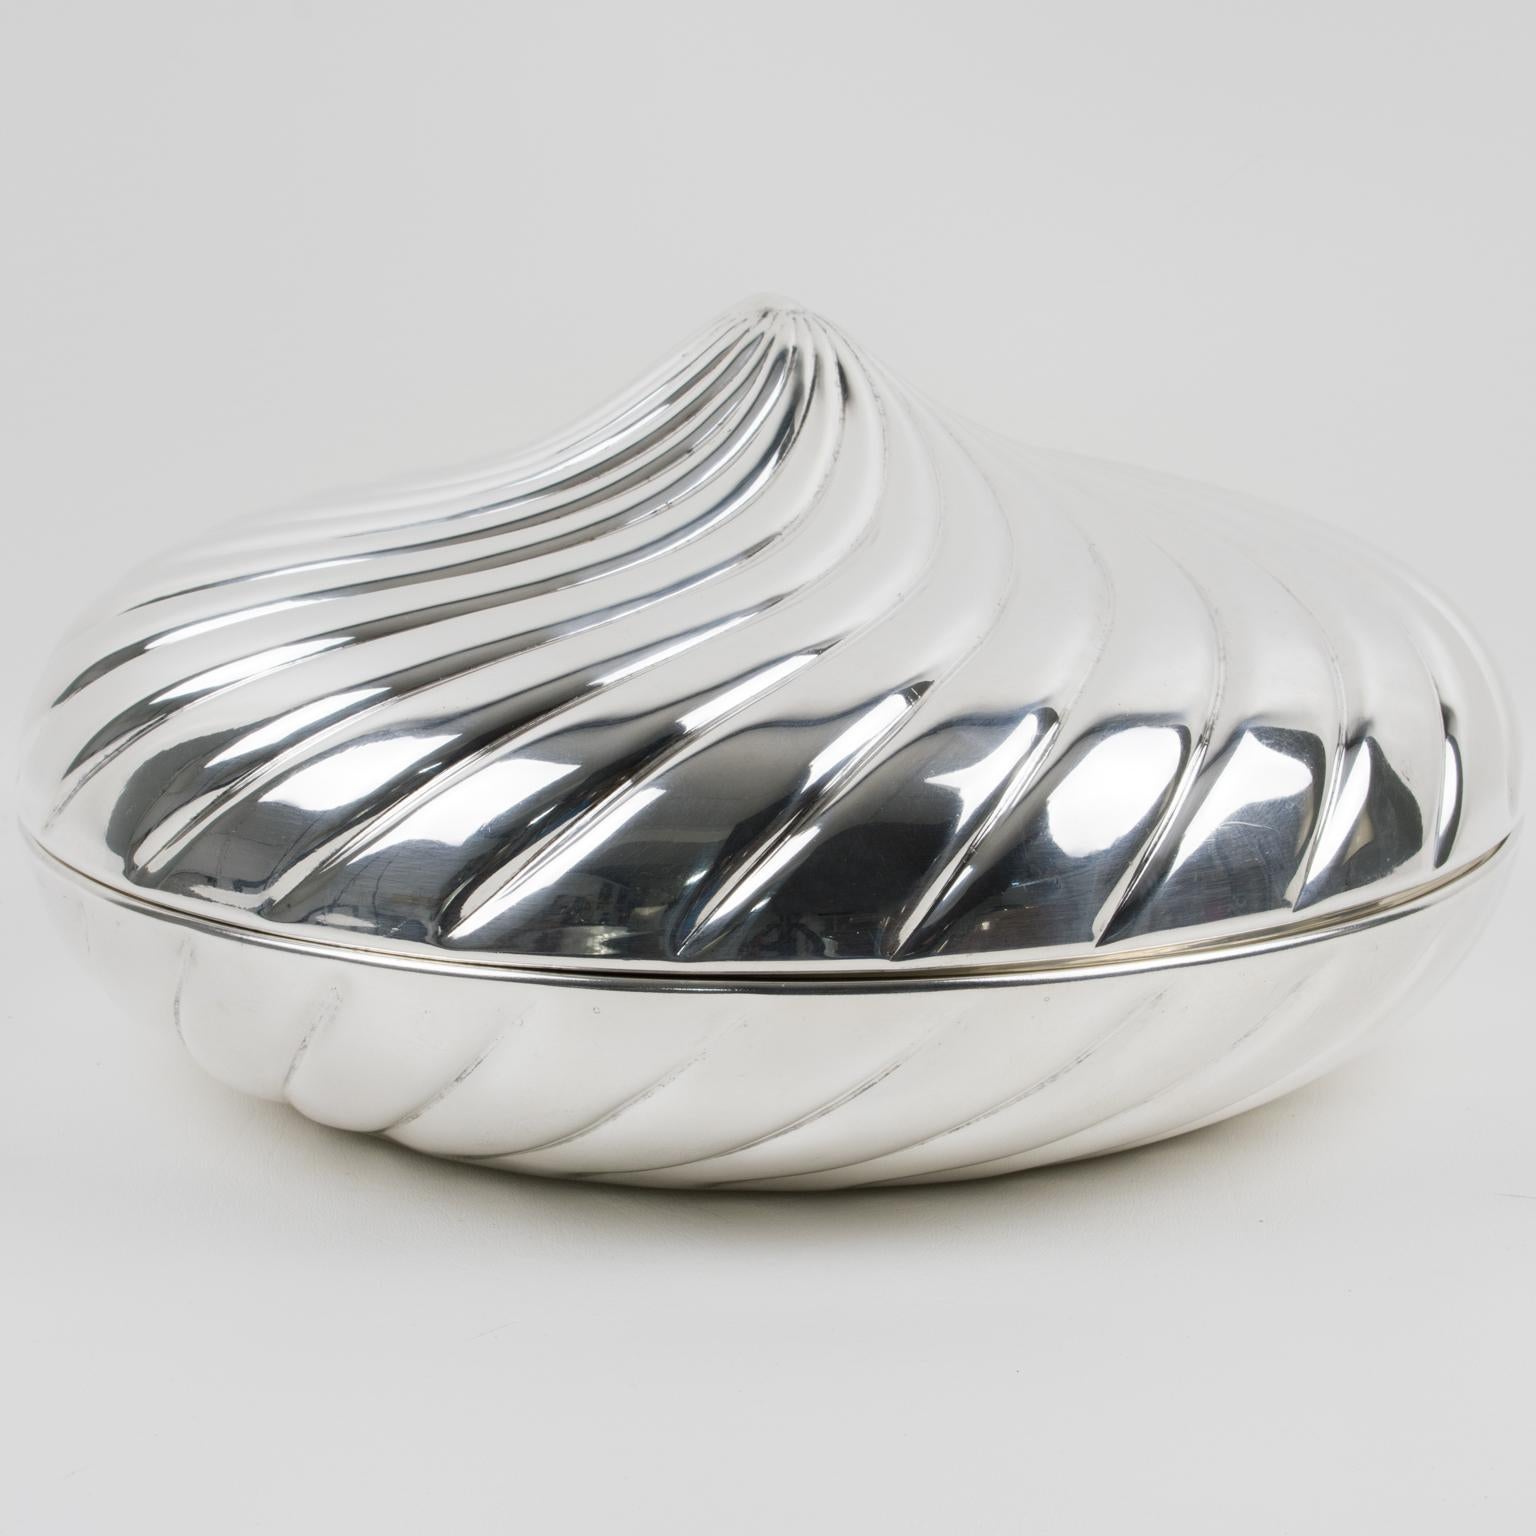 Une fantastique boîte décorative à couvercle en métal argenté créée par le designer italien Egidio Broggi, Milano. Cette boîte impressionnante présente une forme ronde surdimensionnée avec un motif tourbillonnant comme une meringue géante. La boîte